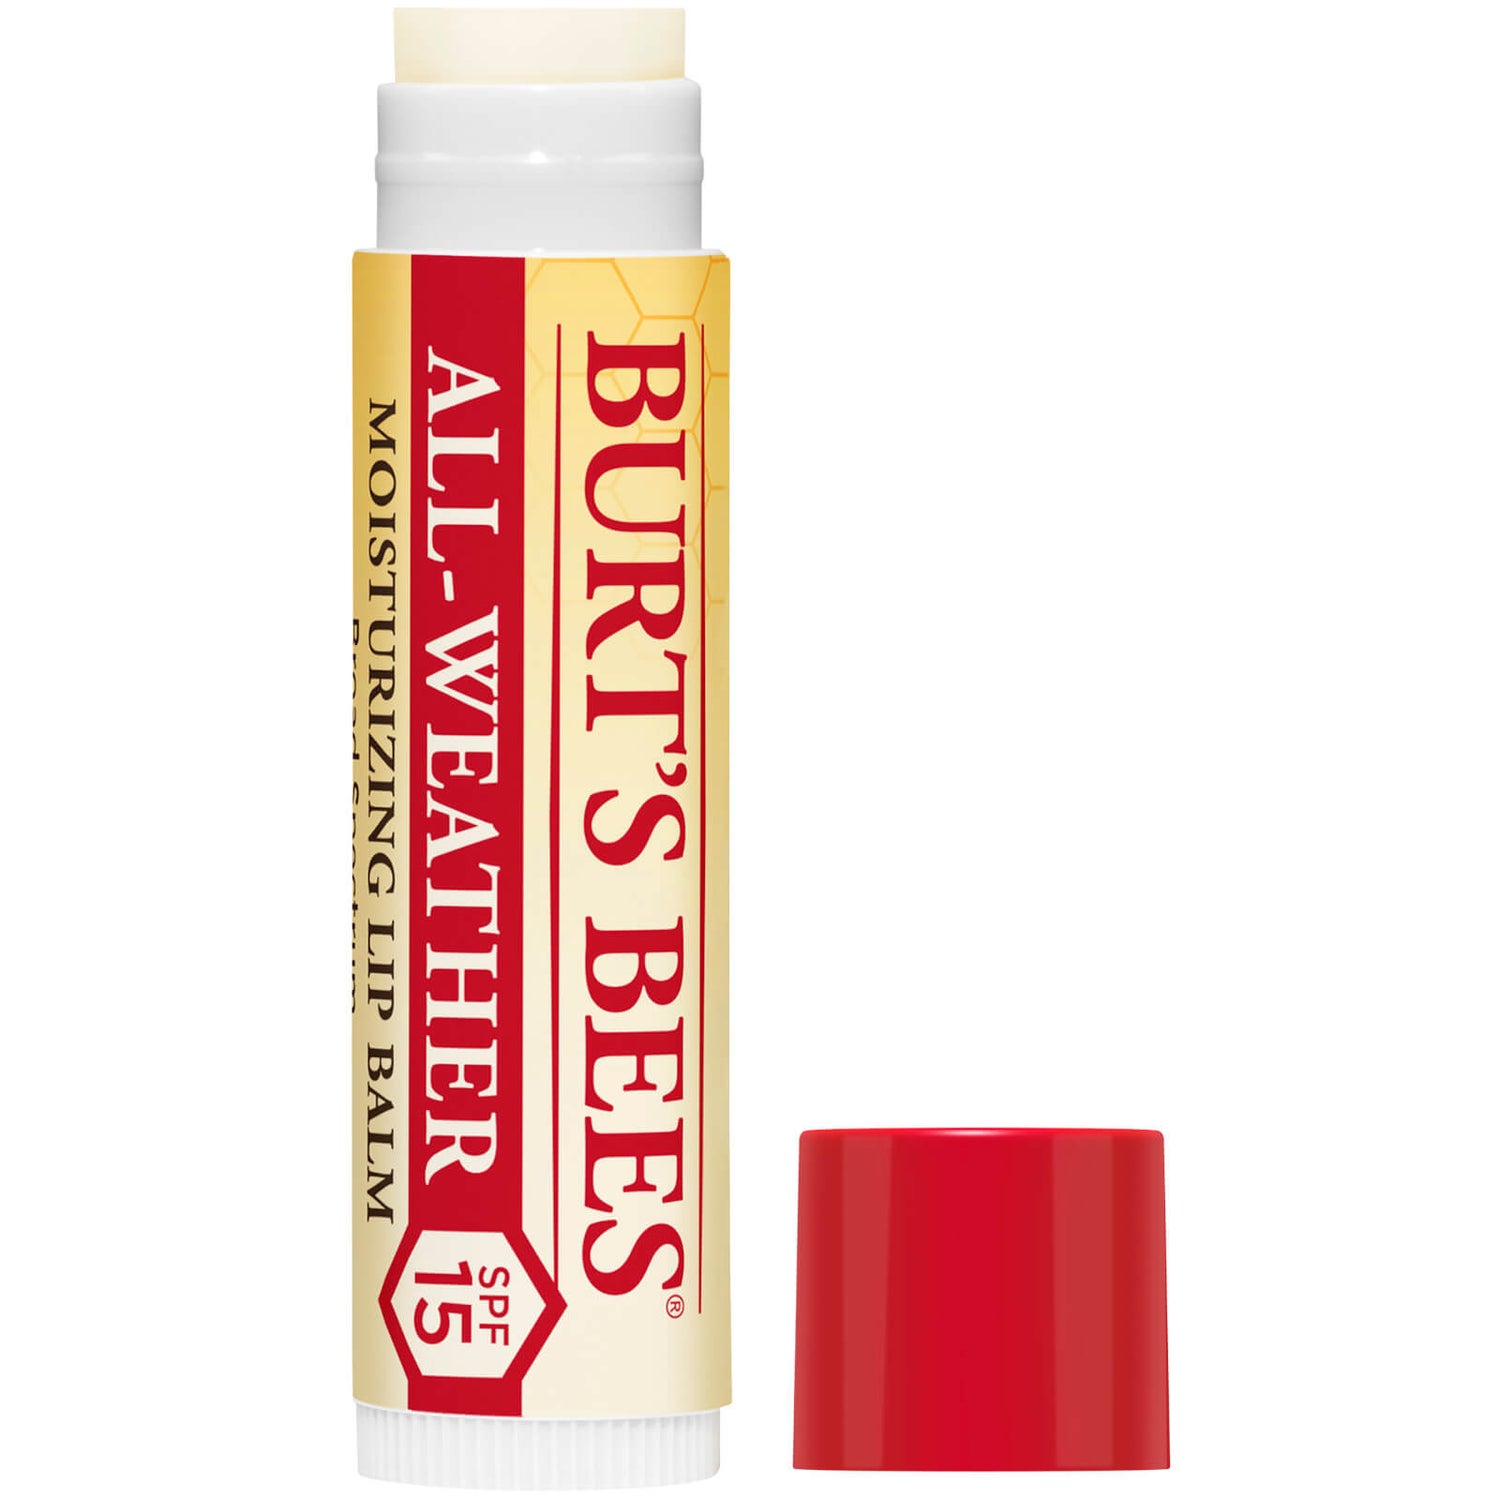 100% natürlicher, feuchtigkeitsspendender Lippenbalsam mit LSF 15, 4.25g